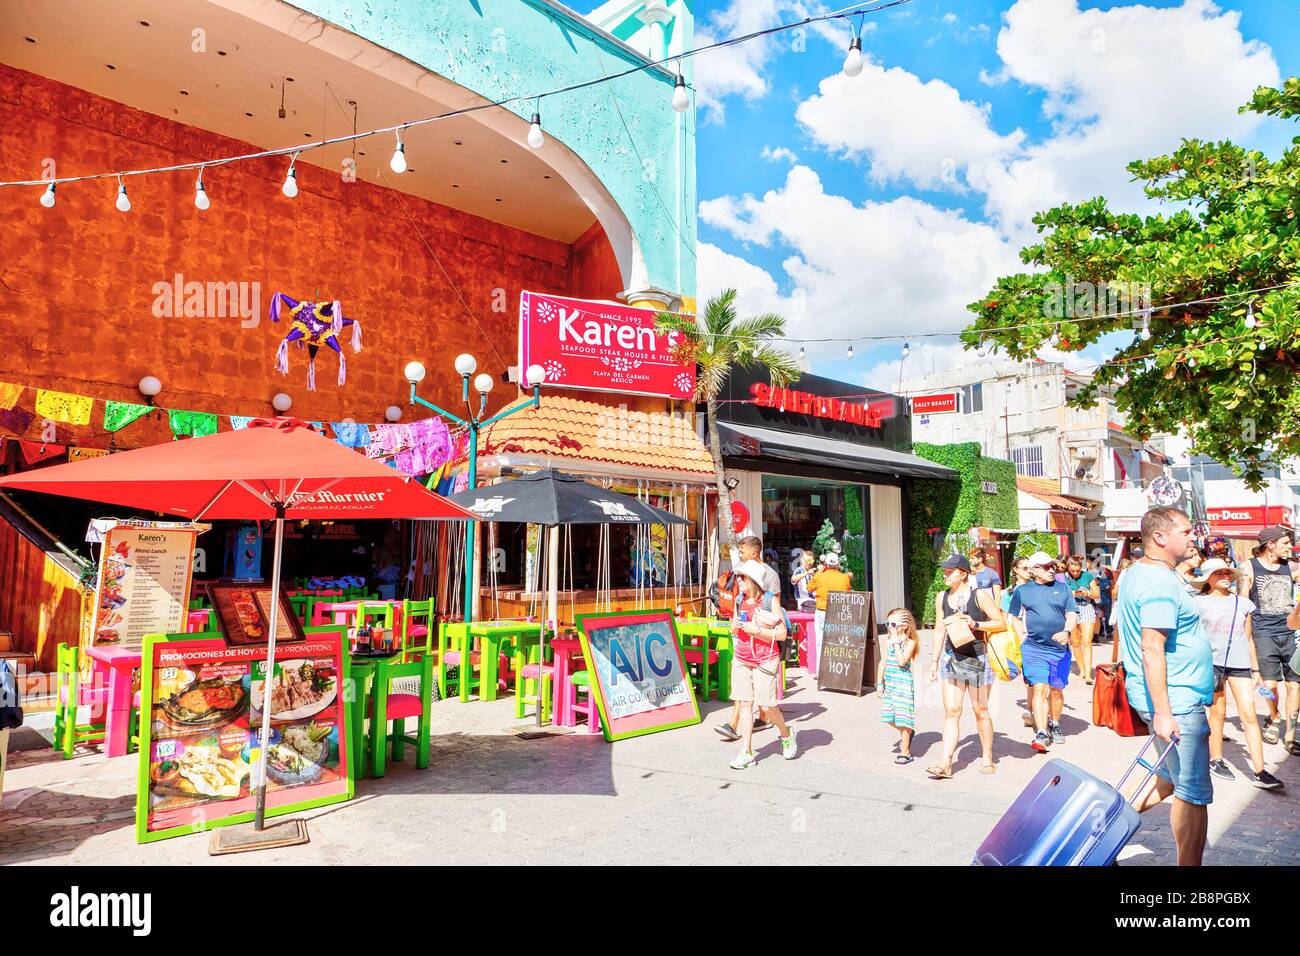 PLAYA DEL CARMEN, MEXIKO - DEC. 26, 2019: Die Besucher können an der berühmten 5th Avenue im Vergnügungsviertel Playa del Carmen in der Yucata einkaufen Stockfoto